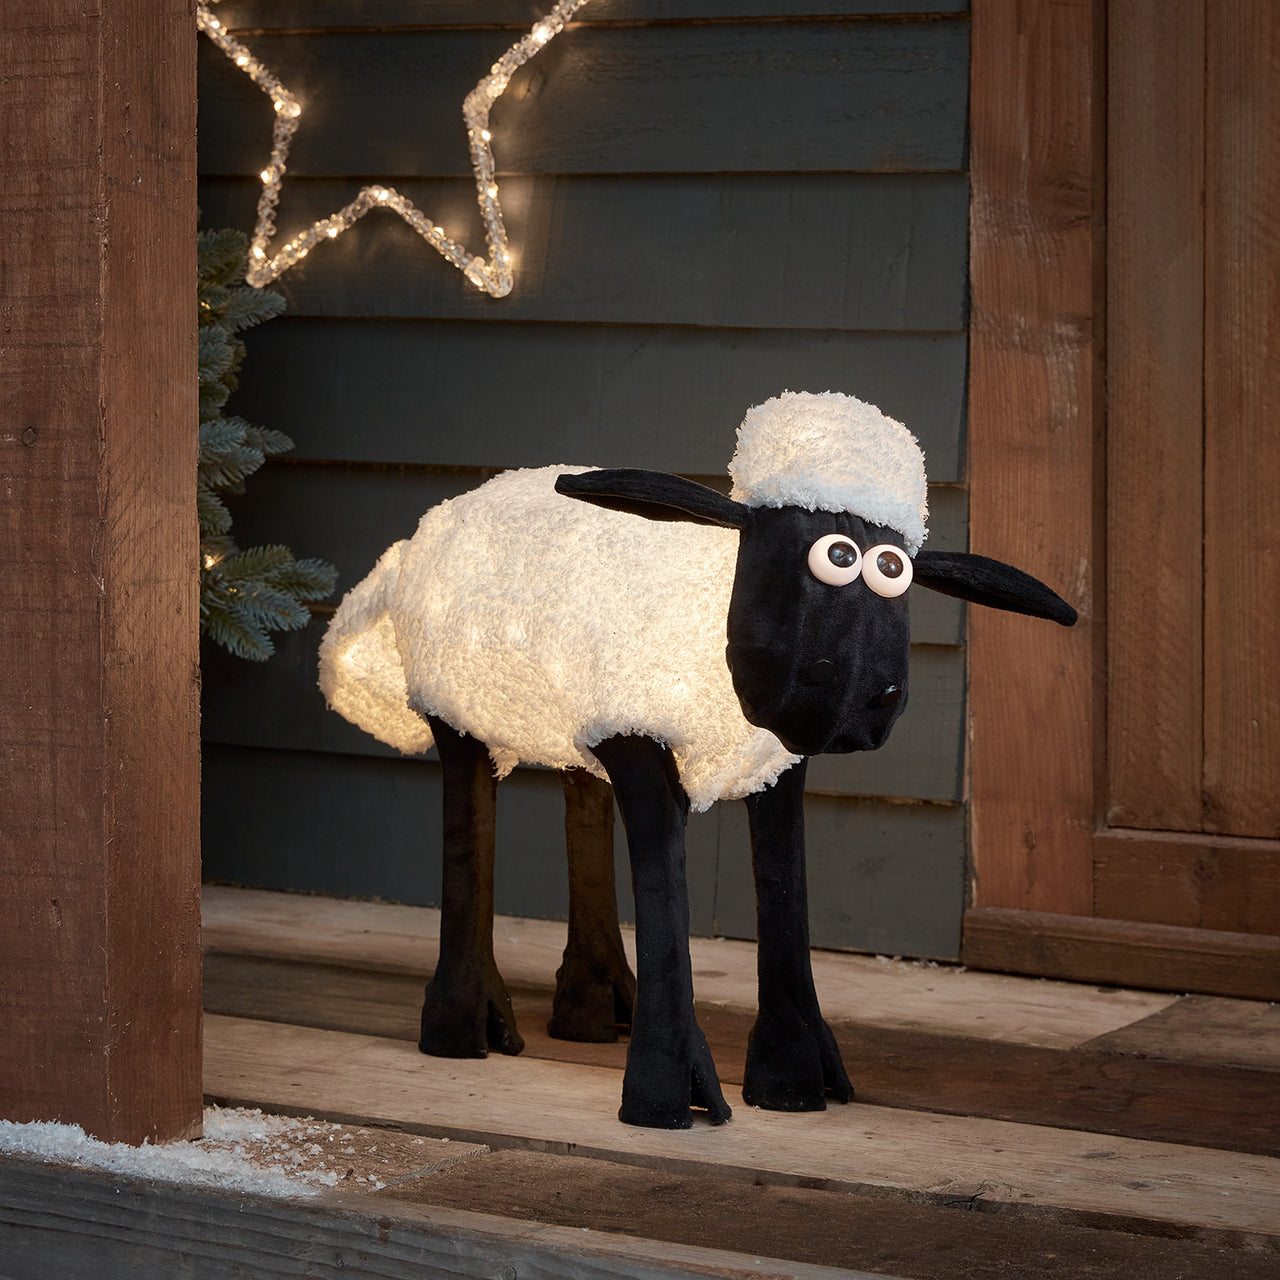 Shaun the Sheep™ Light Up Christmas Figure